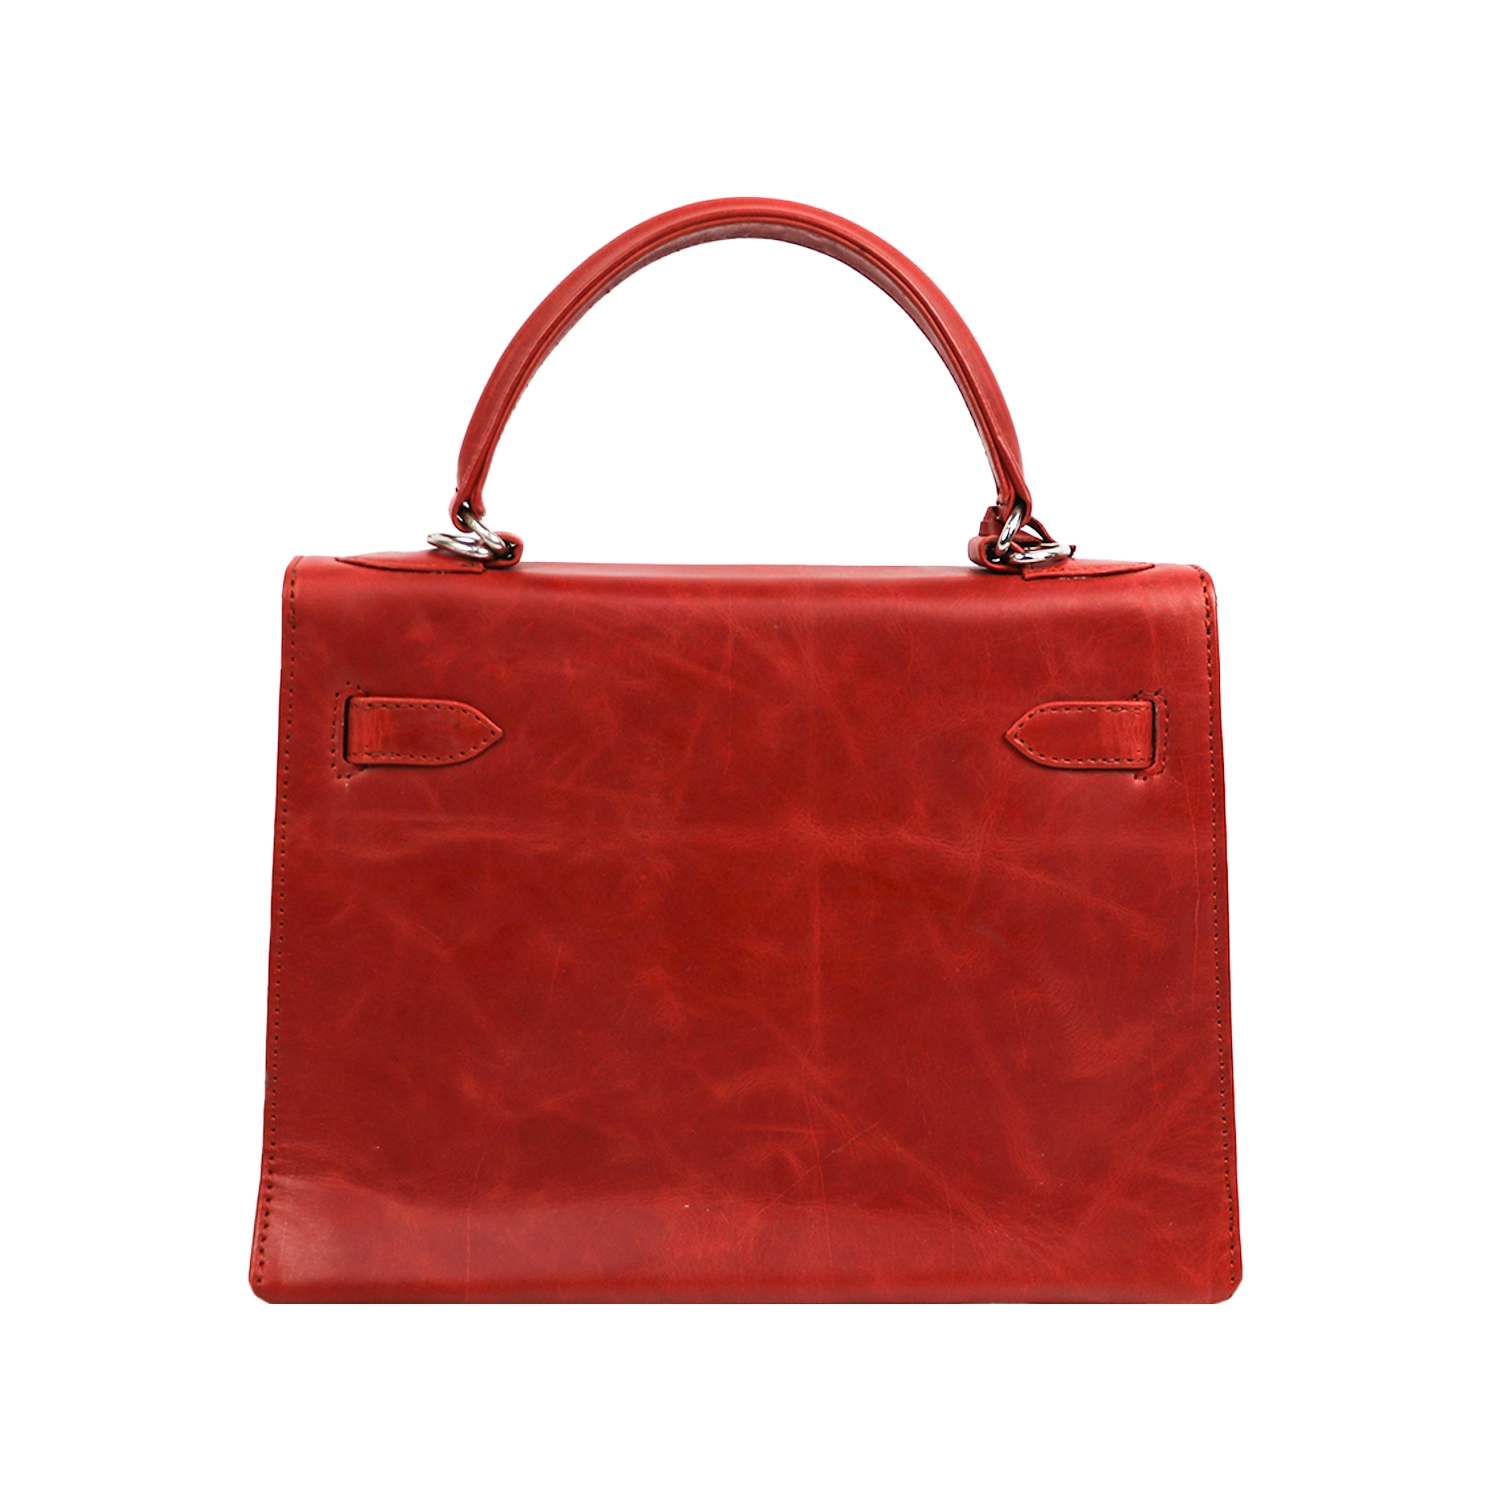 Designer red cute handbag with unique lock